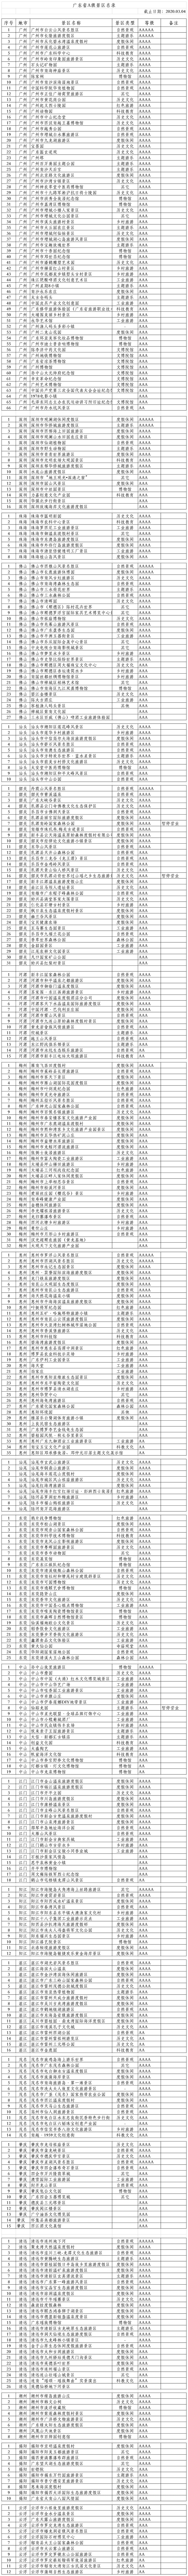 广东省A级景区名录-截止2020年3月4日